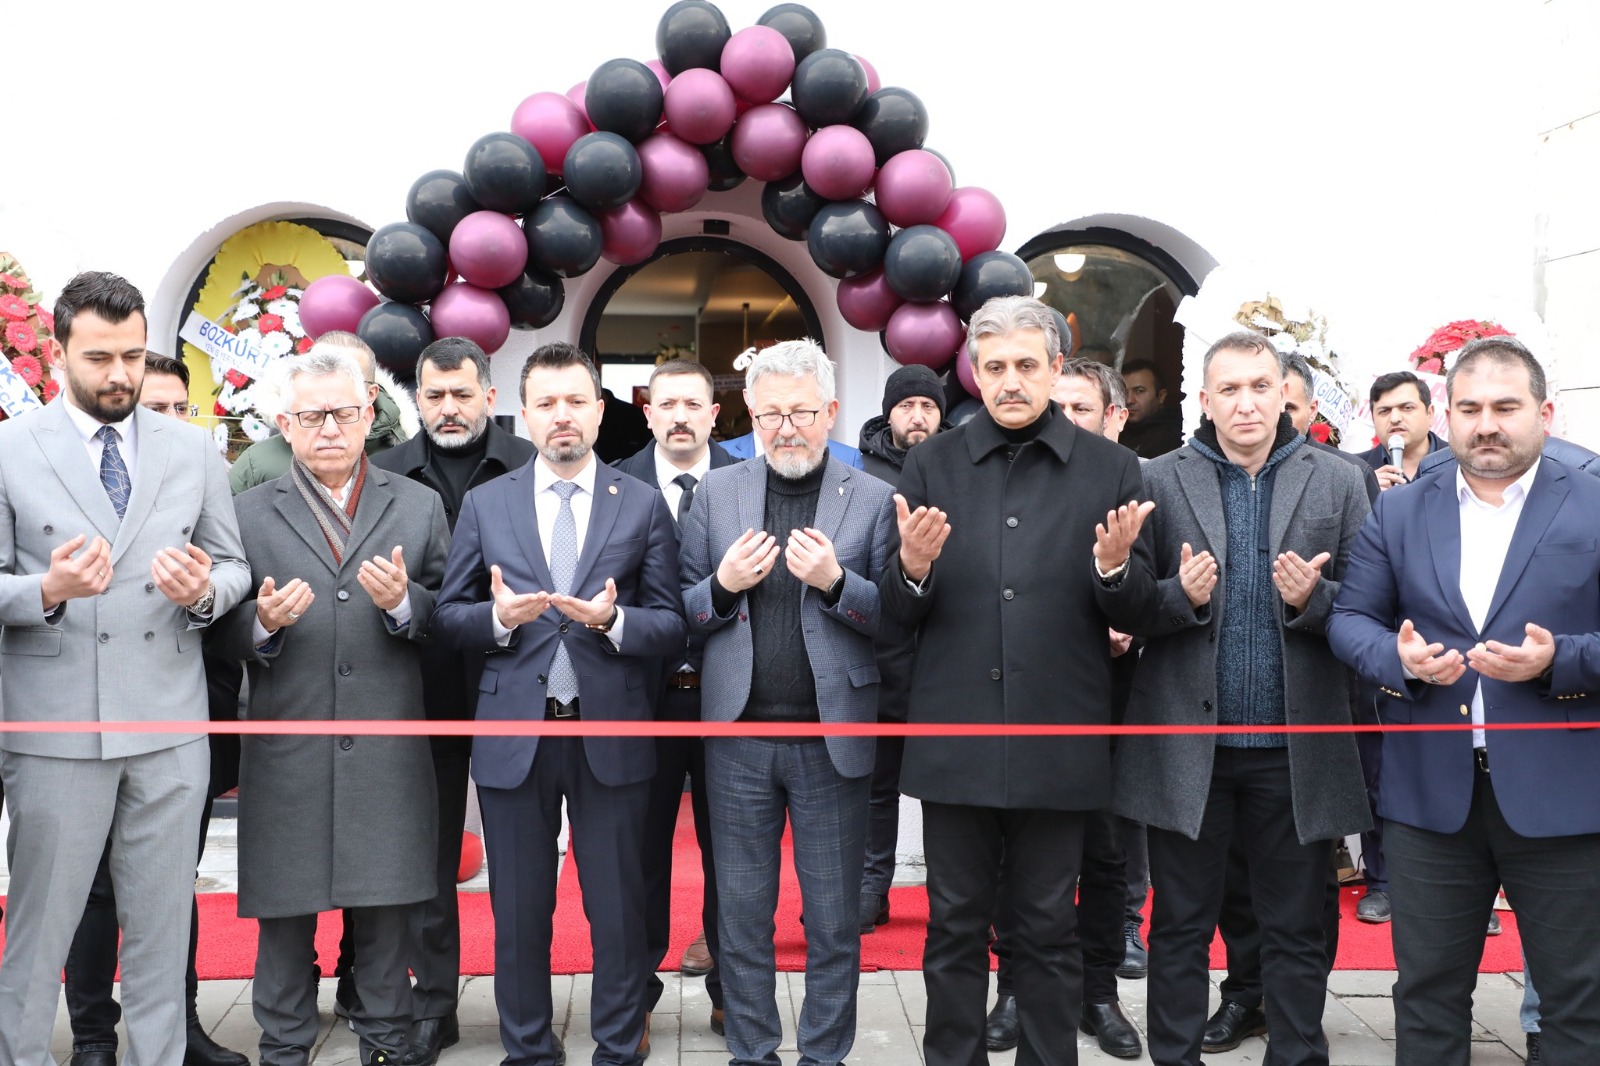  Mozaix Cafe Yozgat’ta büyük bir katılımla açıldı